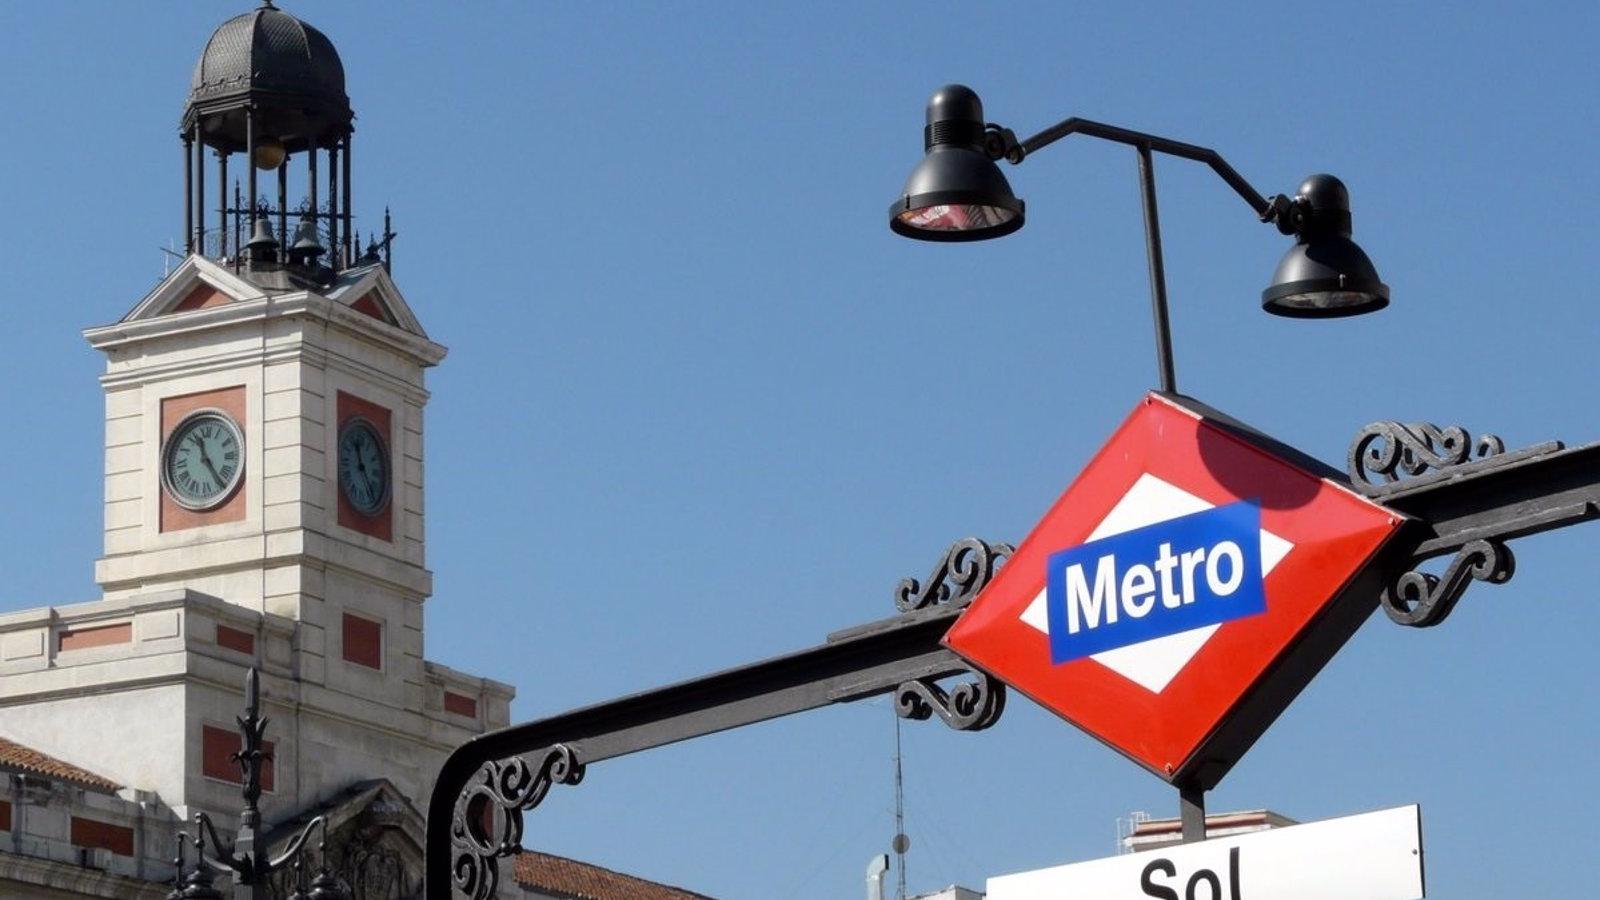 Las obras de remodelación de la Línea 1 de Metro provocará afecciones al tráfico en la zona desde este lunes